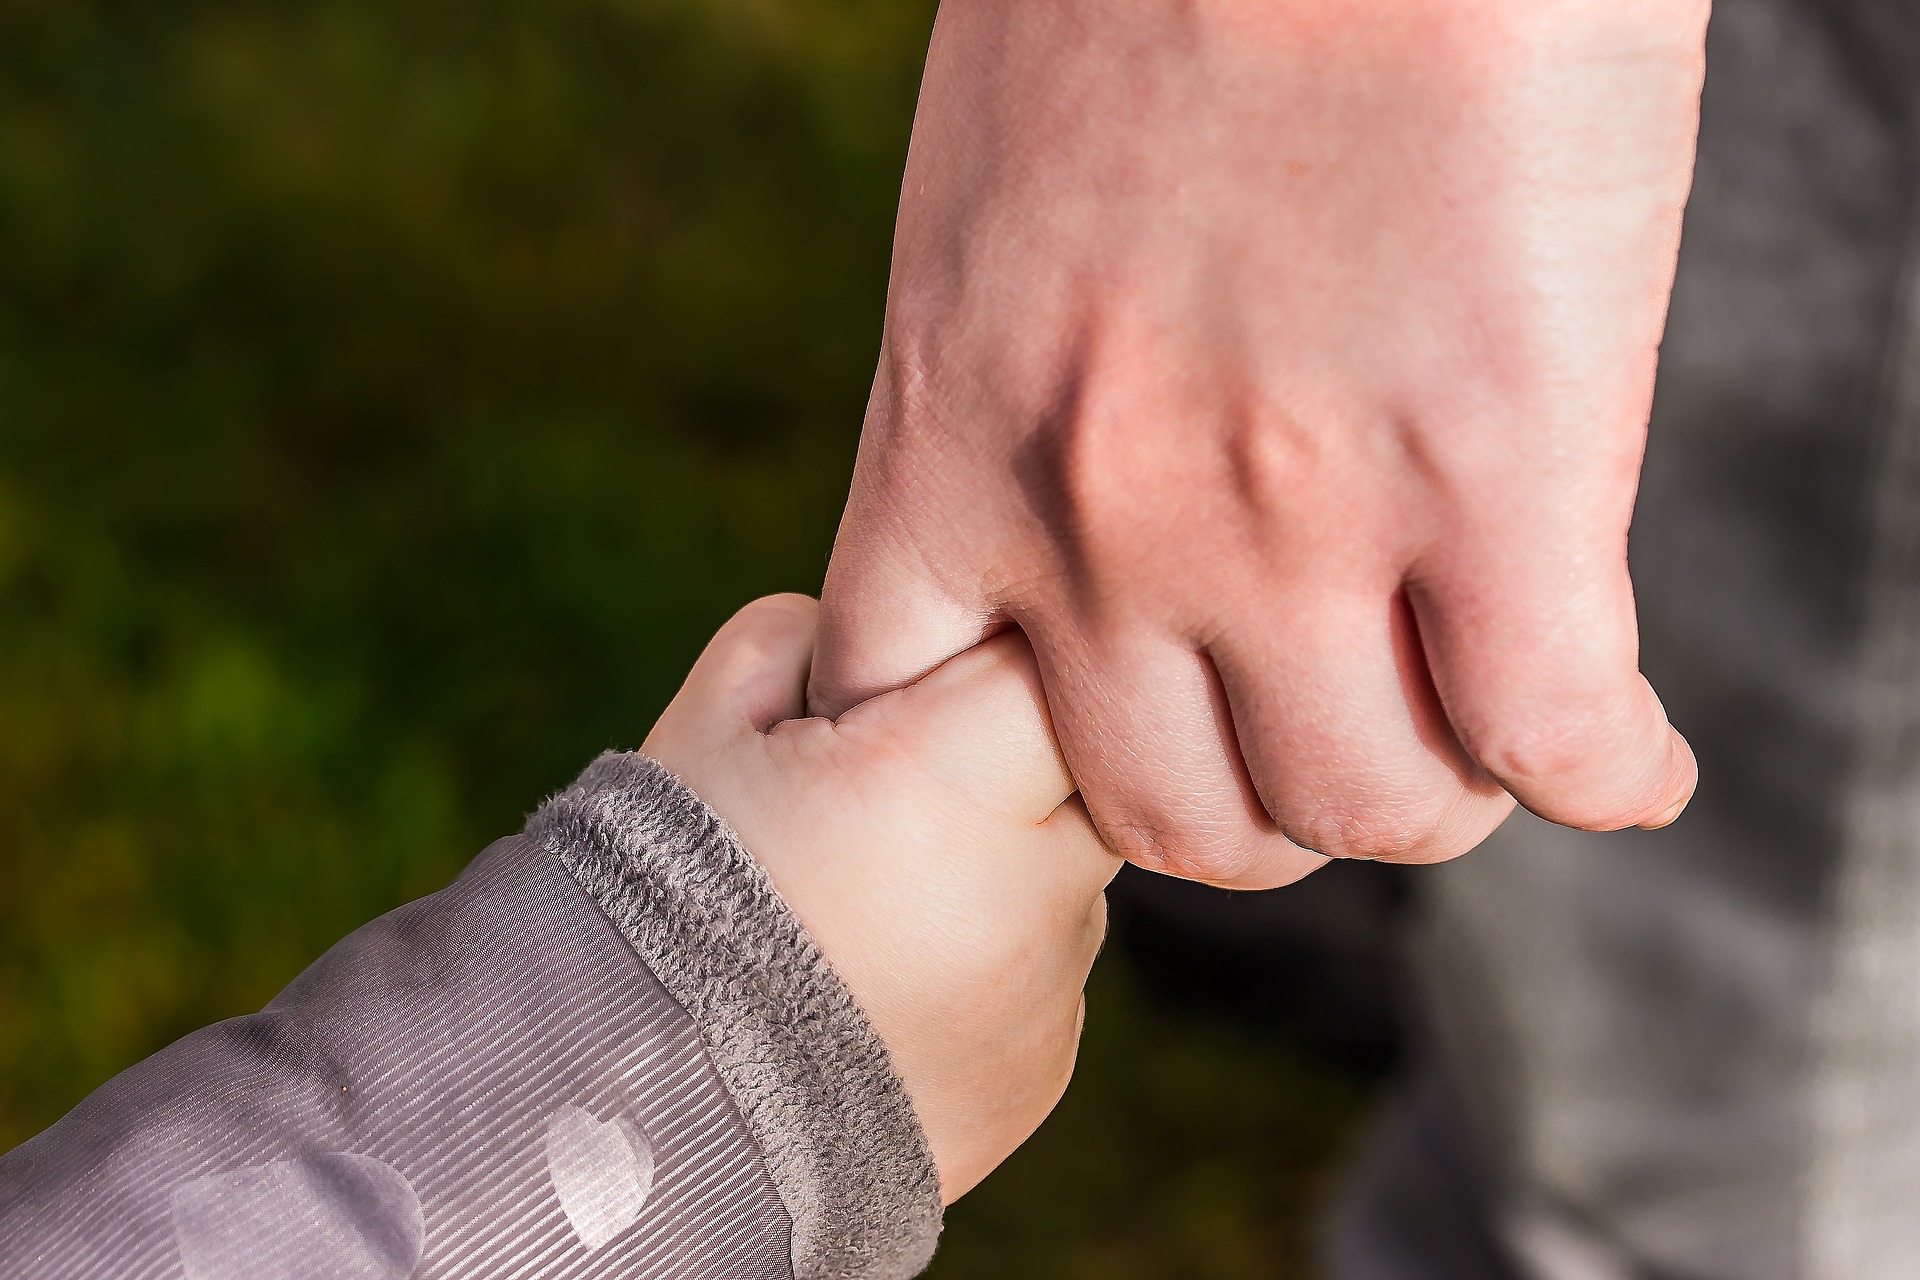 Hånd i hånd - barn og voksen - tilknytningsmønstre